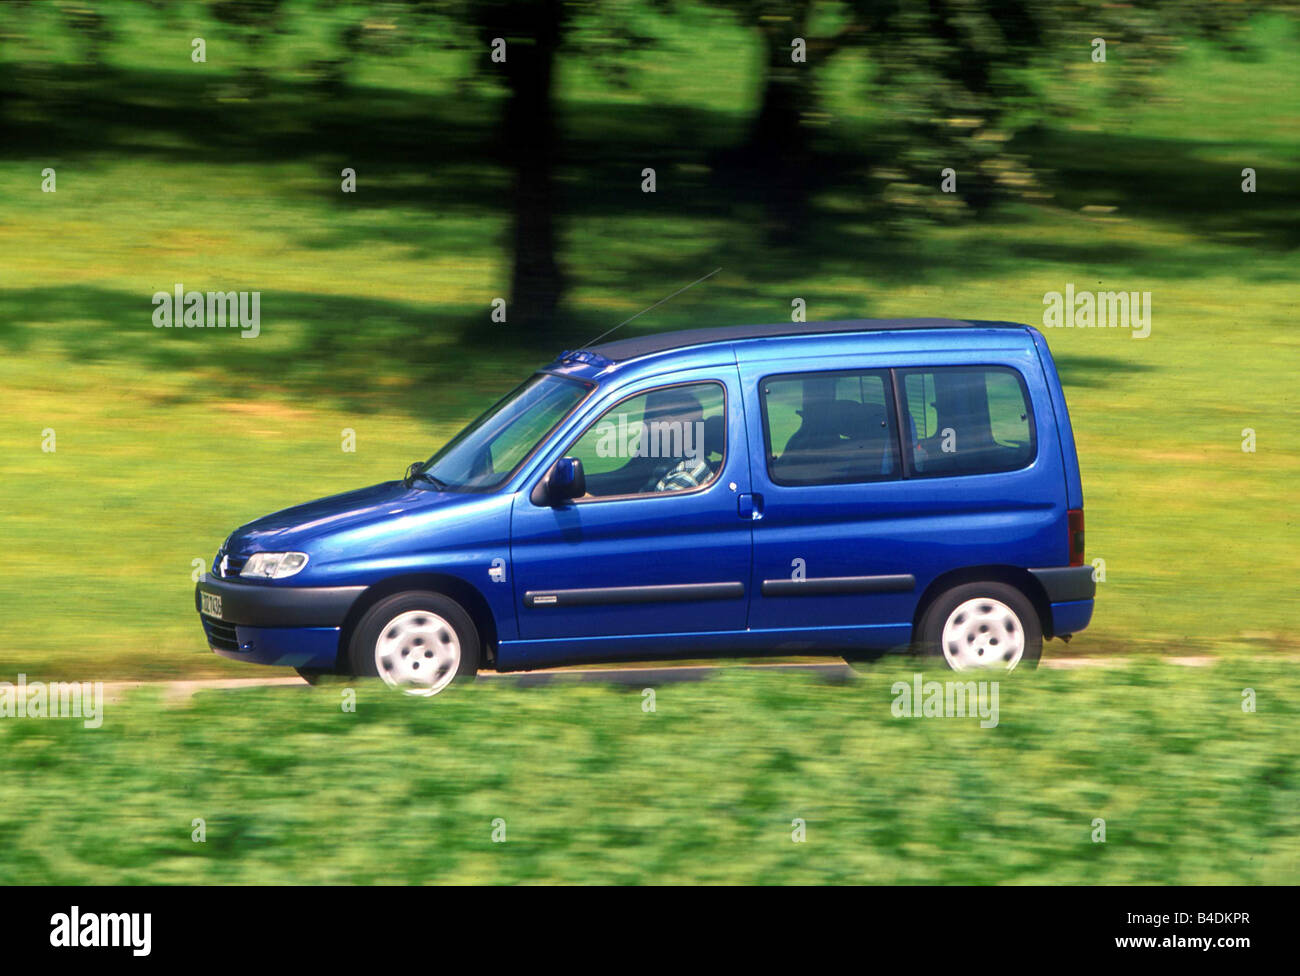 Voiture, Citroen Berlingo 1.8i, Van, l'année de modèle 1997-2002, bleu en mouvement, country road, side view Banque D'Images